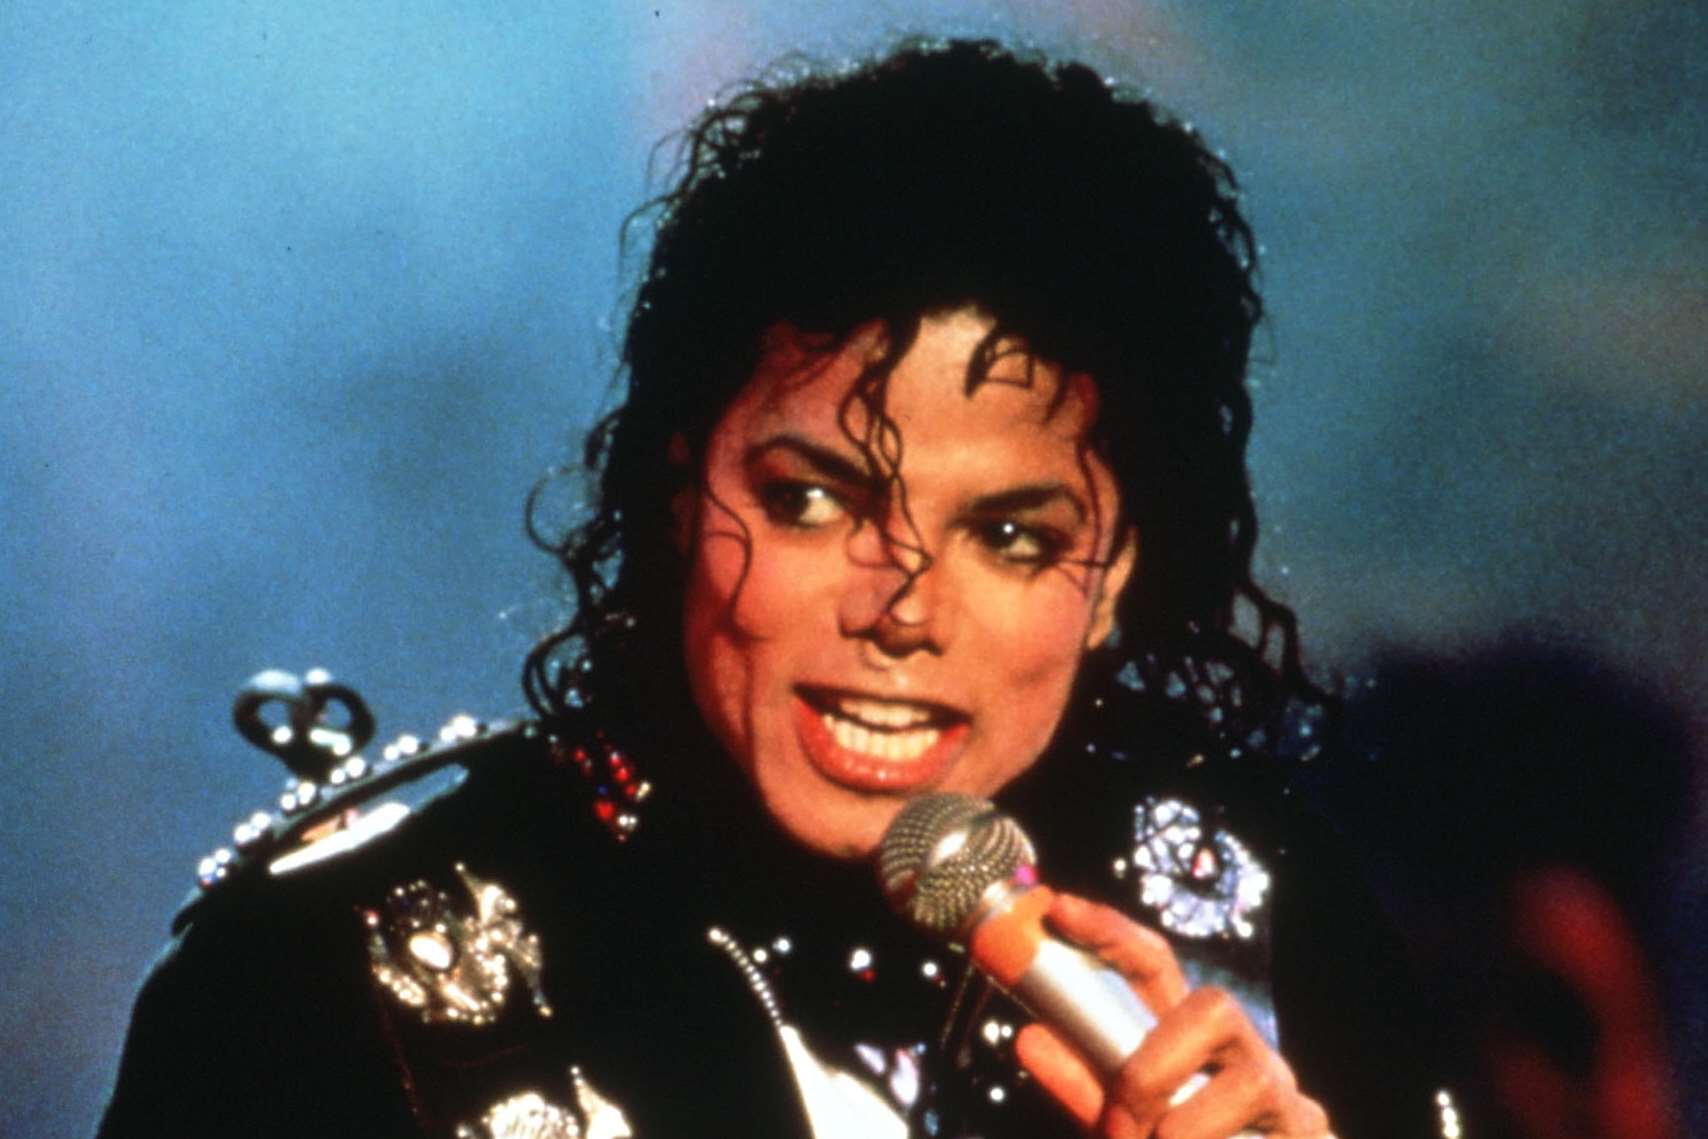 The real Michael Jackson